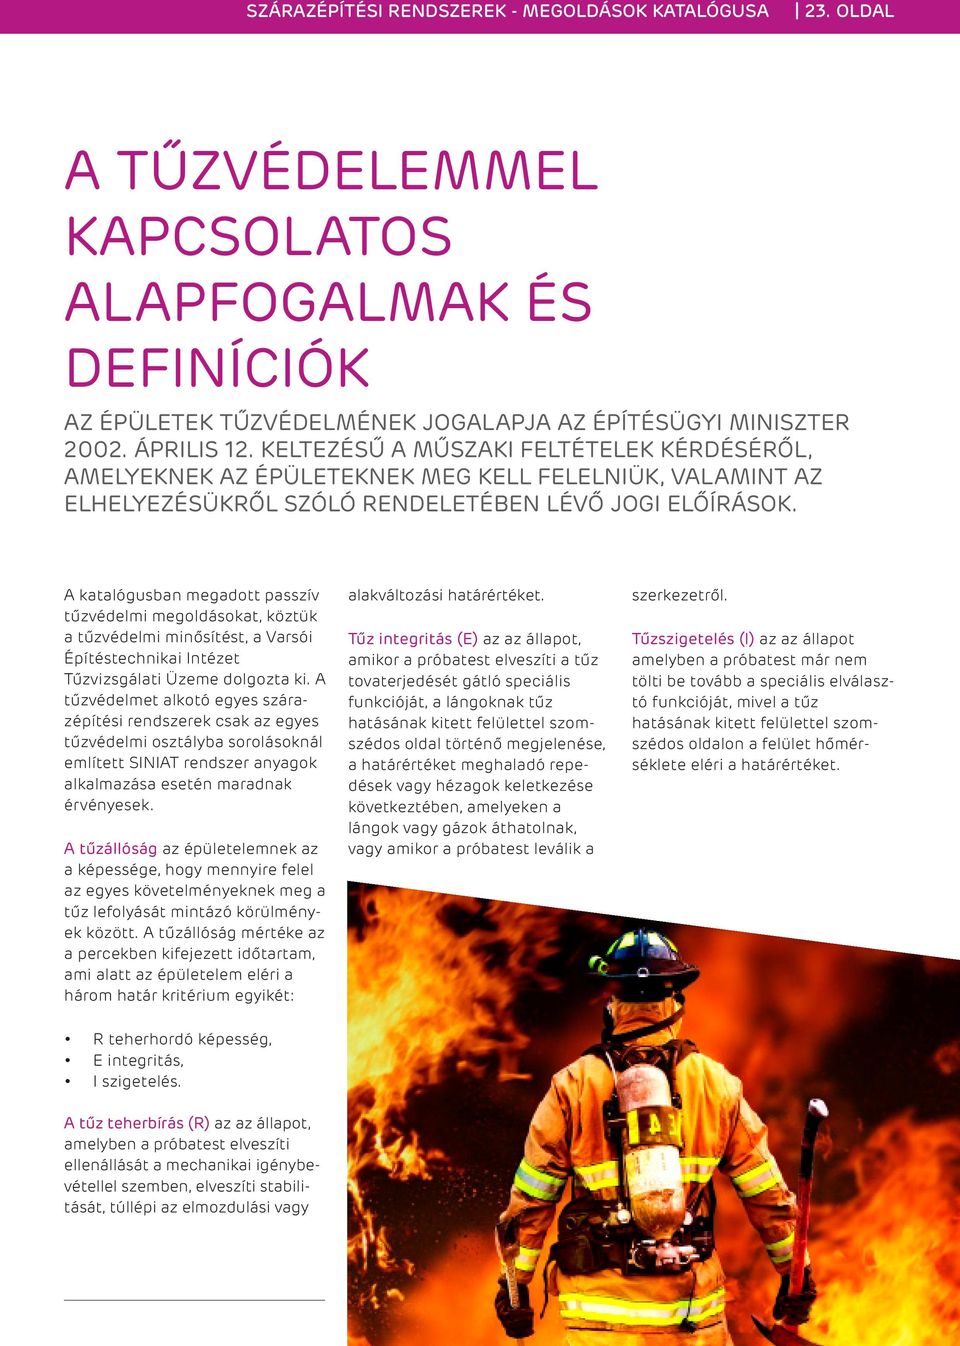 A katalógusban megadott passzív tűzvédelmi megoldásokat, köztük a tűzvédelmi minősítést, a Varsói Építéstechnikai Intézet Tűzvizsgálati Üzeme dolgozta ki.